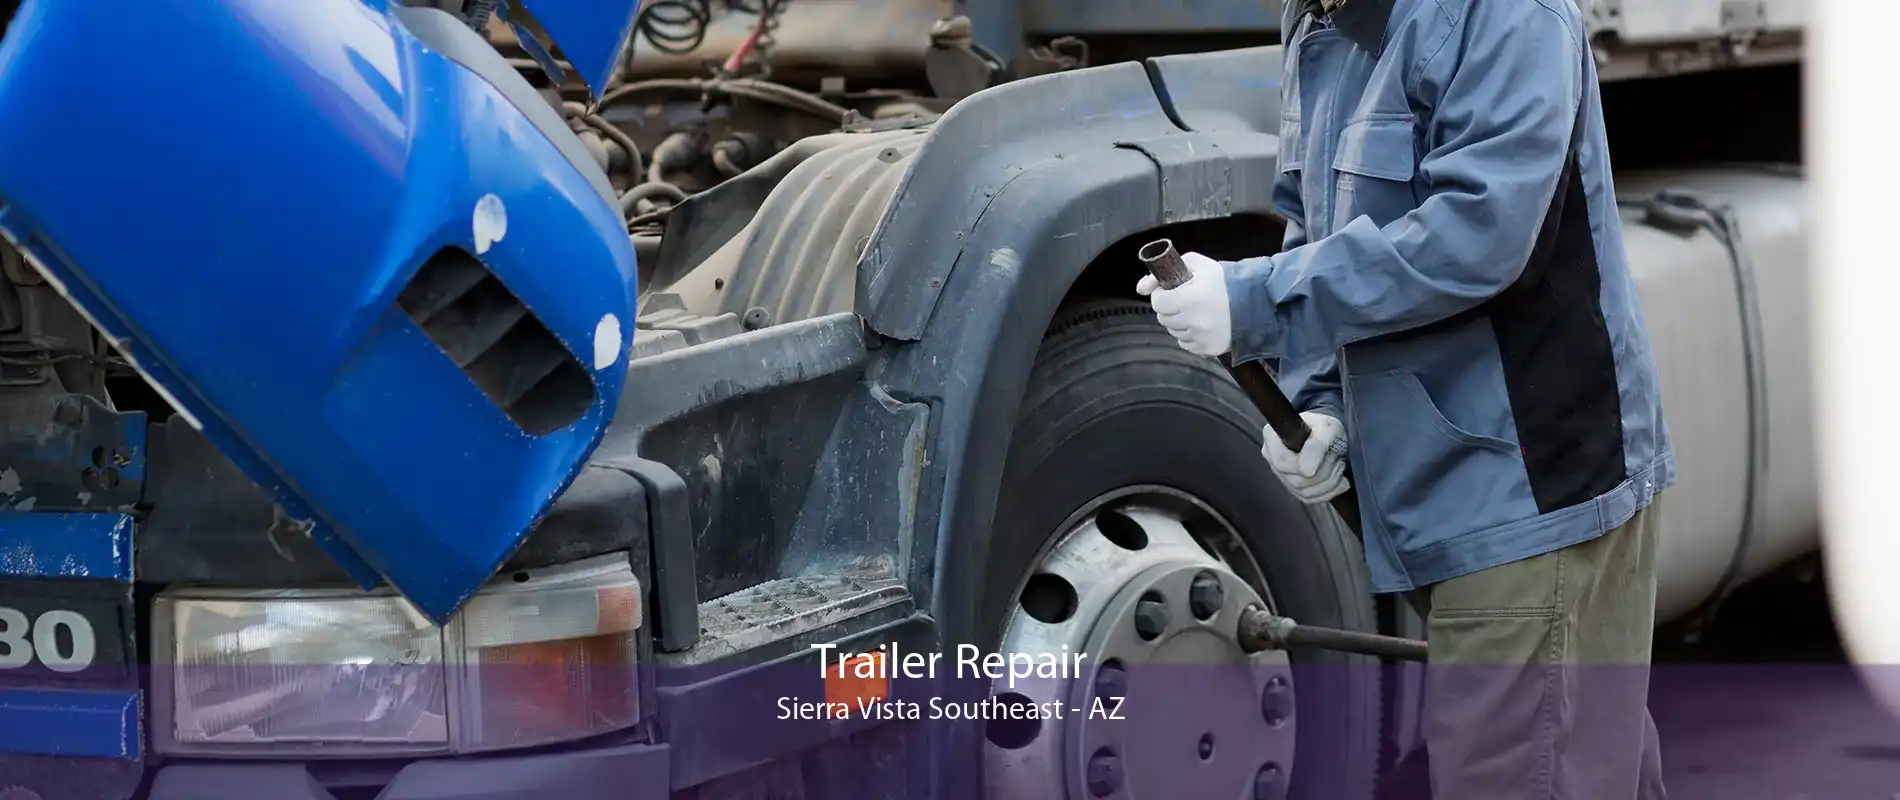 Trailer Repair Sierra Vista Southeast - AZ